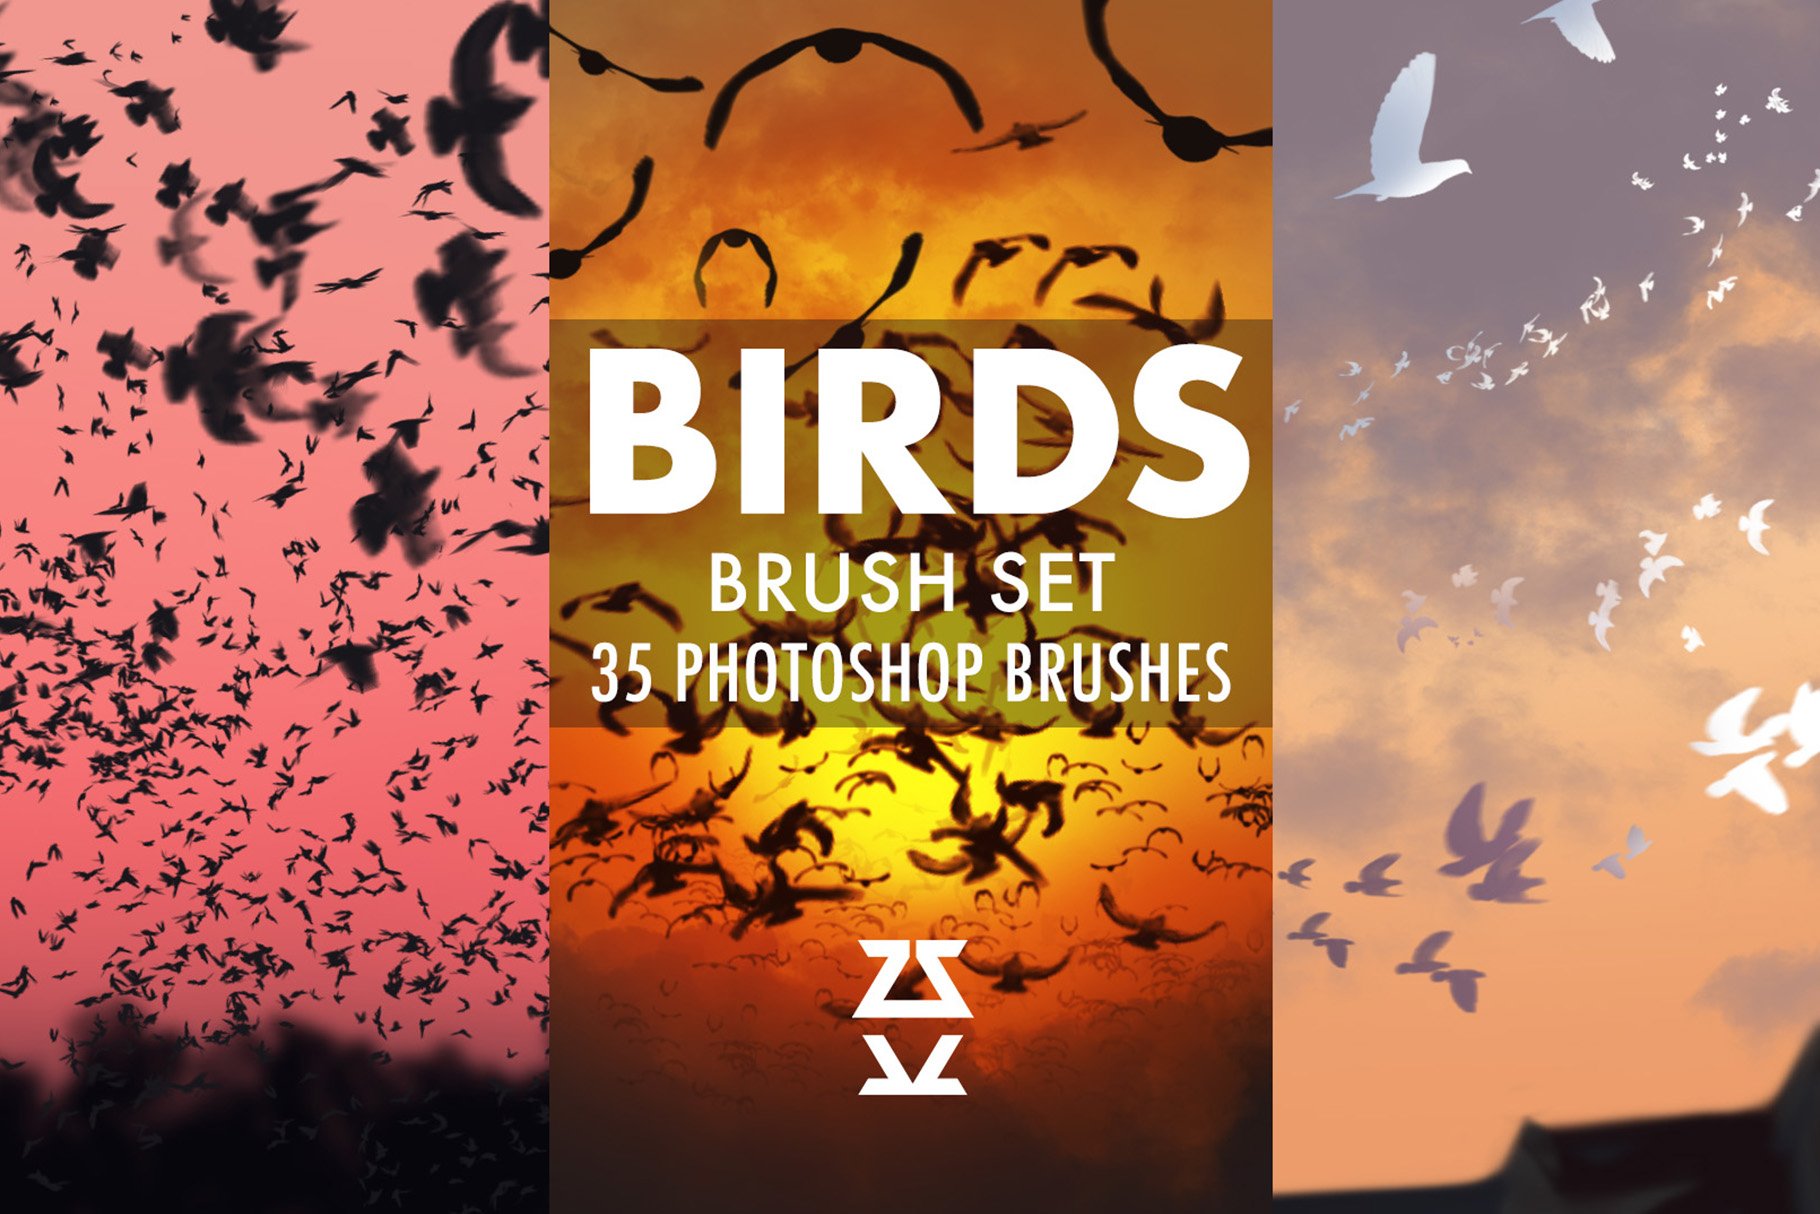 Birds Brush Setcover image.